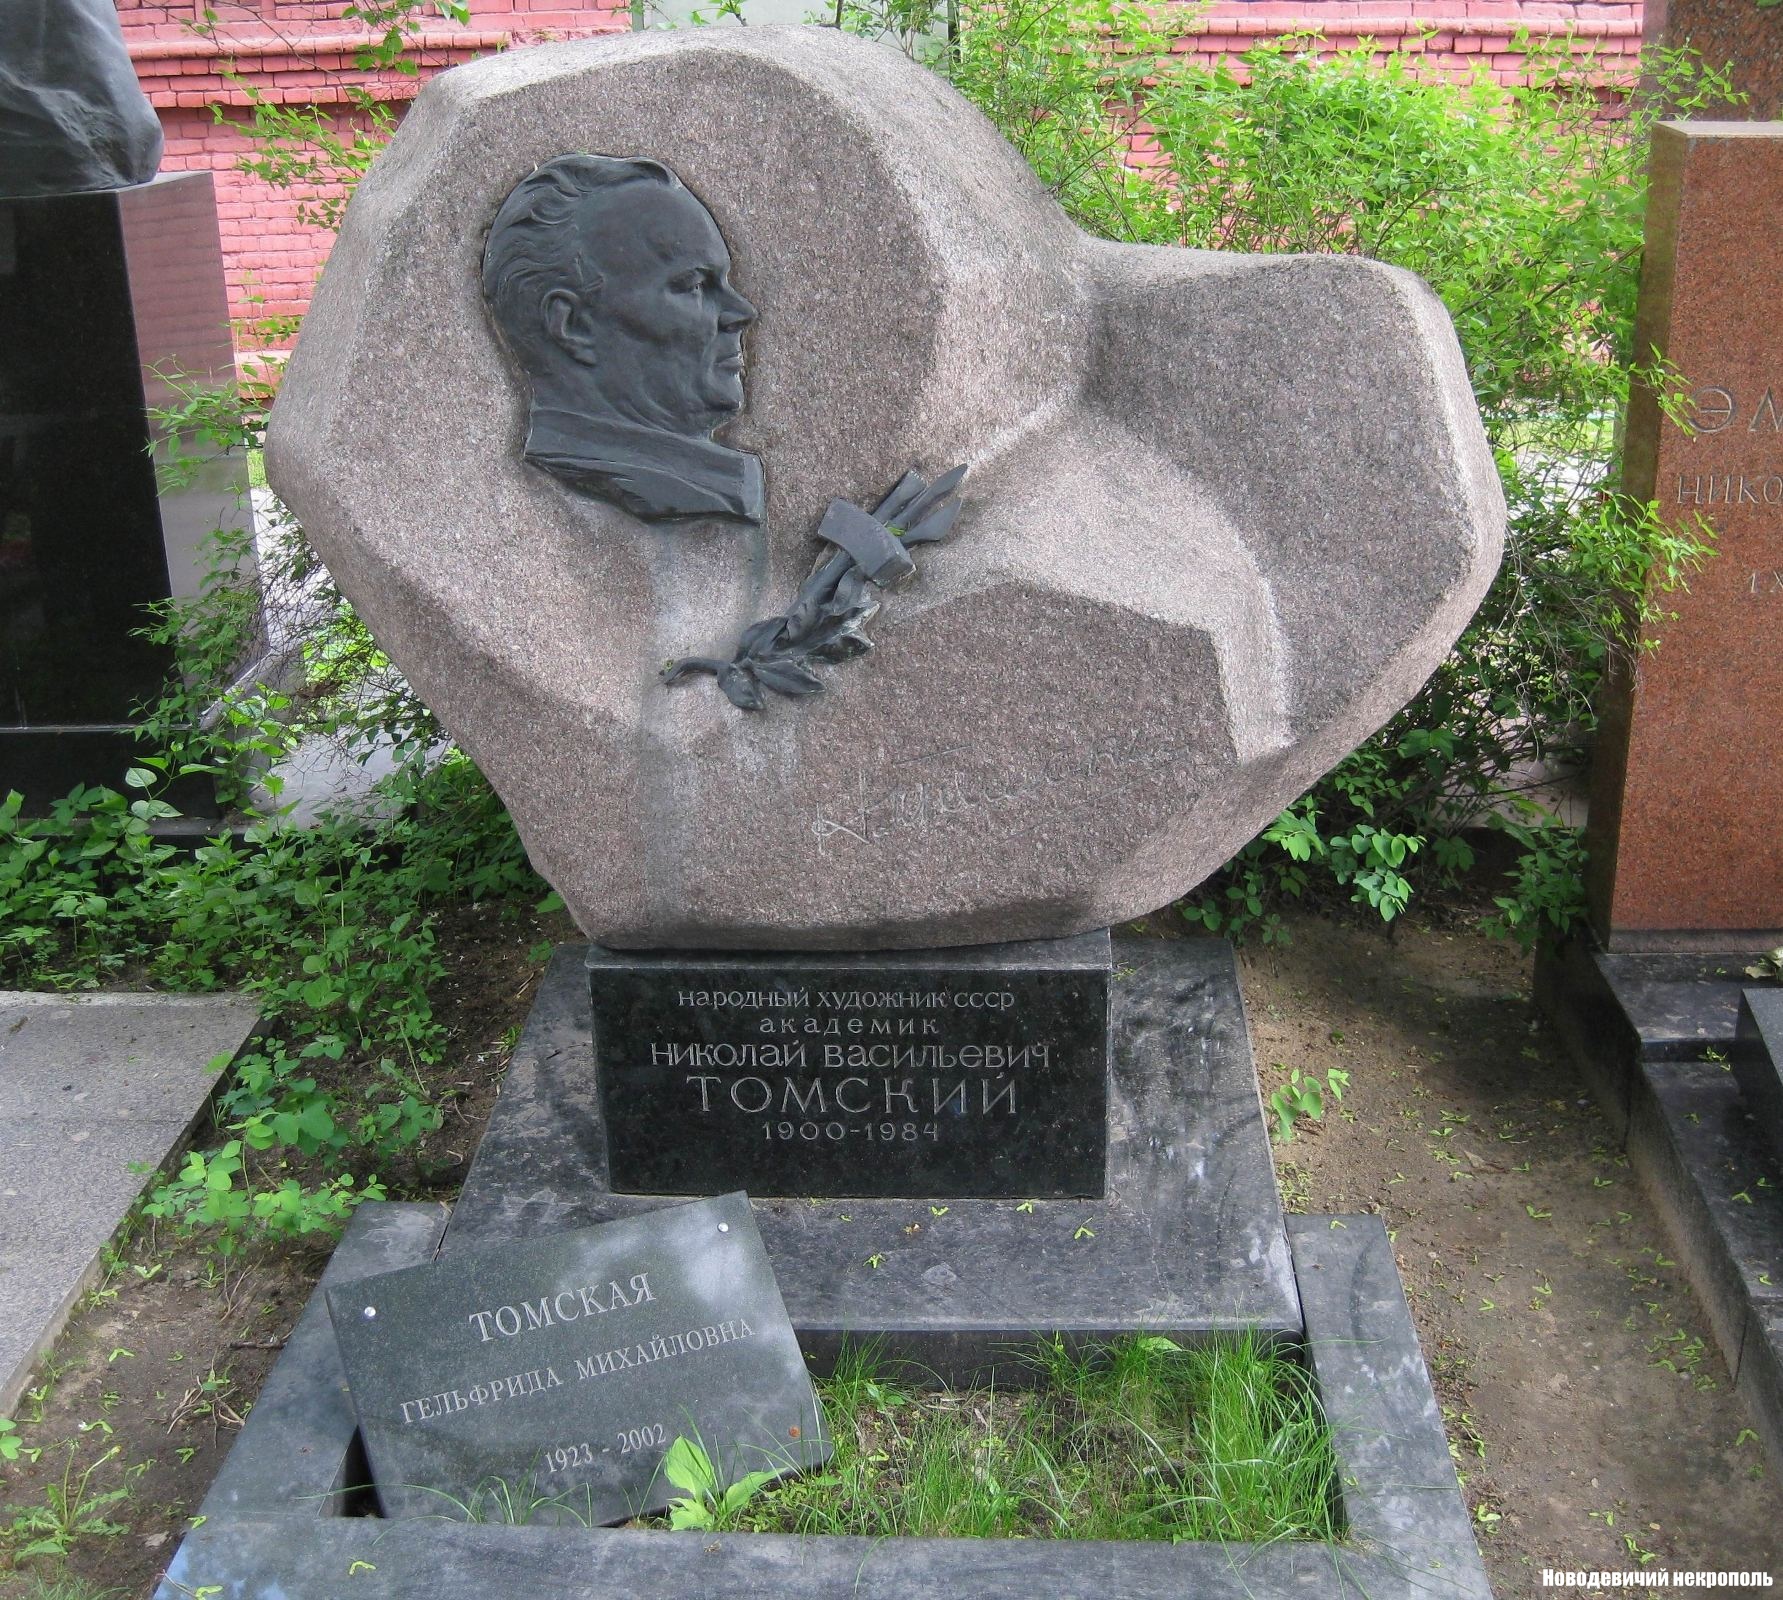 Памятник на могиле Томского Н.В. (1900-1984), ск. Л.Кербель, на Новодевичьем кладбище (10-2-14).